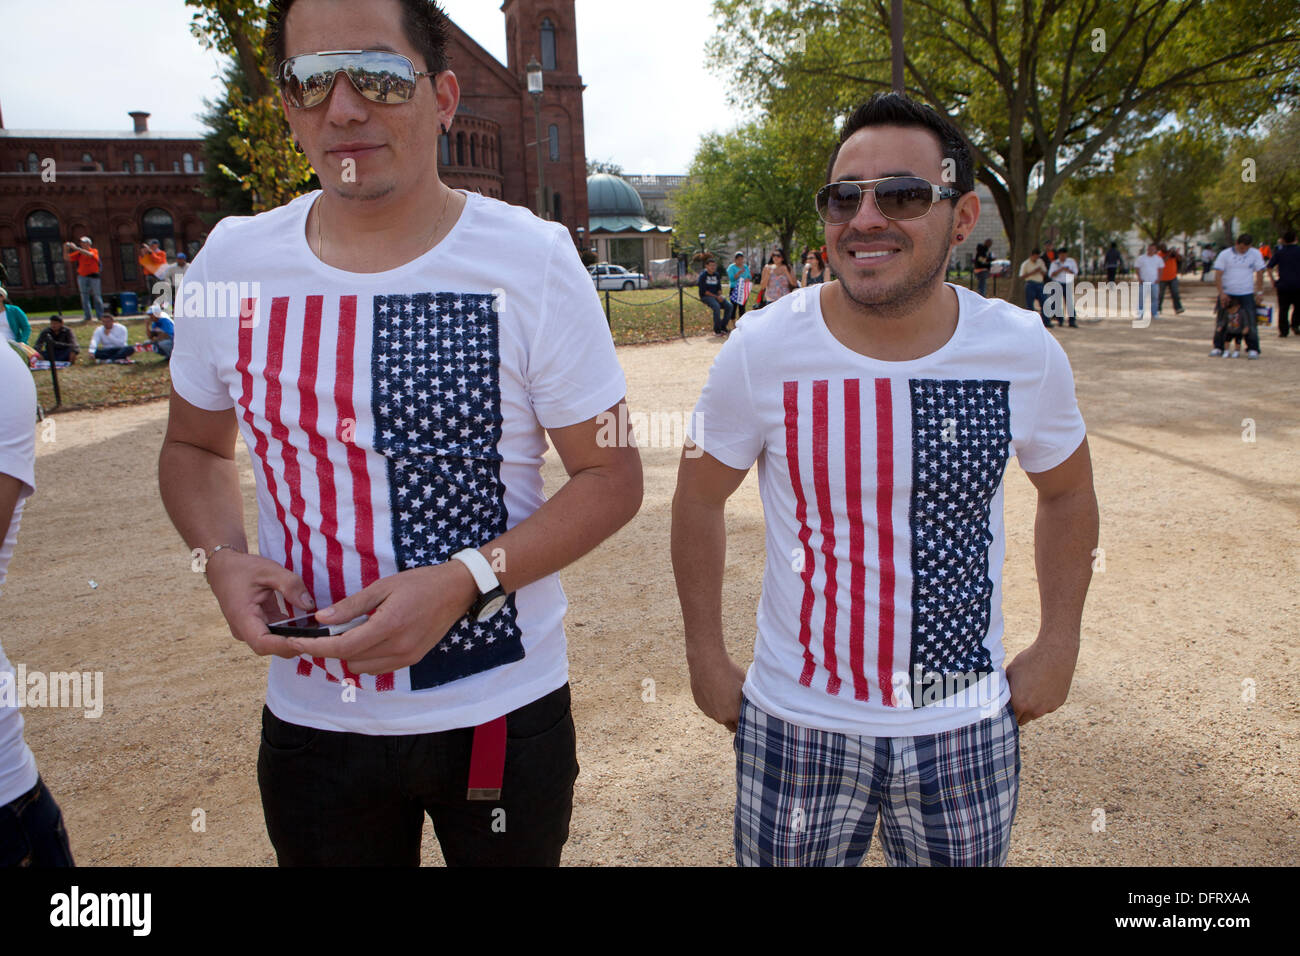 Zwei Männer tragen amerikanische Flagge t-shirts Stockfotografie - Alamy